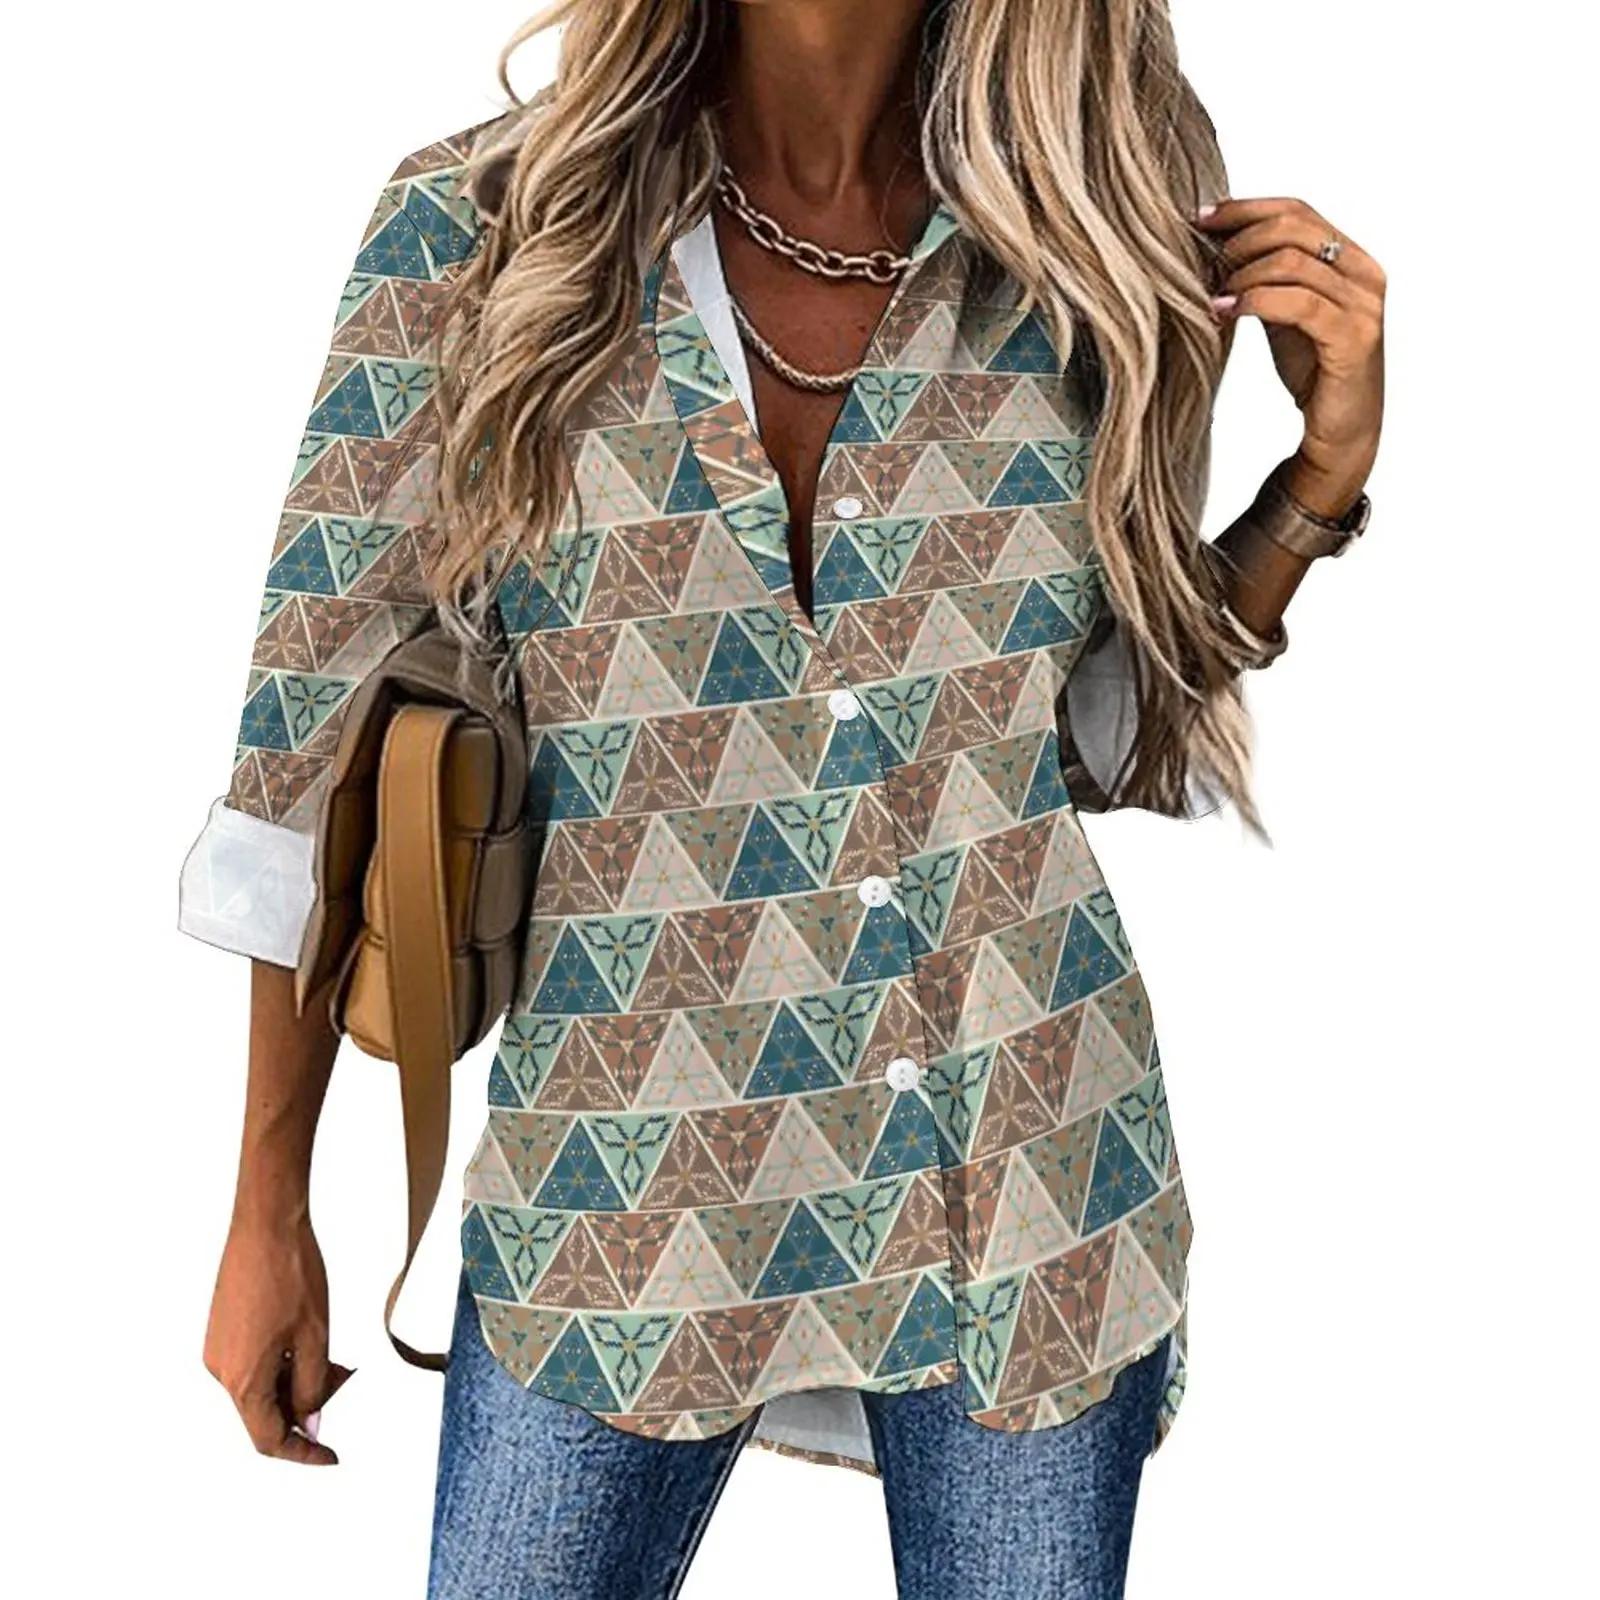 

Свободная блузка с геометрическим принтом, повседневная женская винтажная рубашка с длинным рукавом и геометрическим принтом, весенняя одежда с графическим принтом